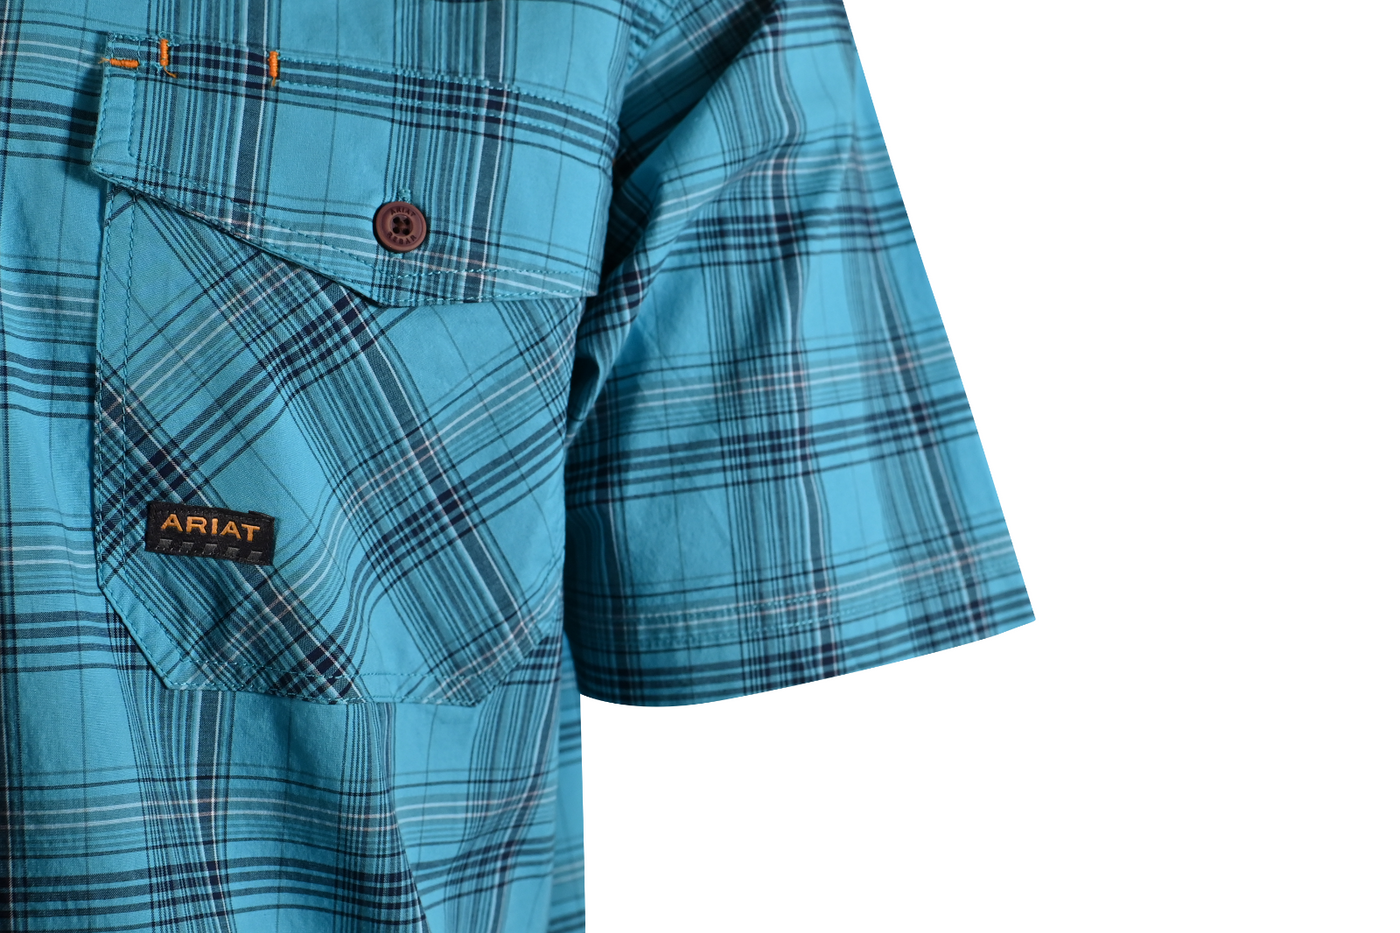 Ariat Men's Shirt Aqua Blue Bachelor Button Plaid Rebar Short Sleeve Woven (491)